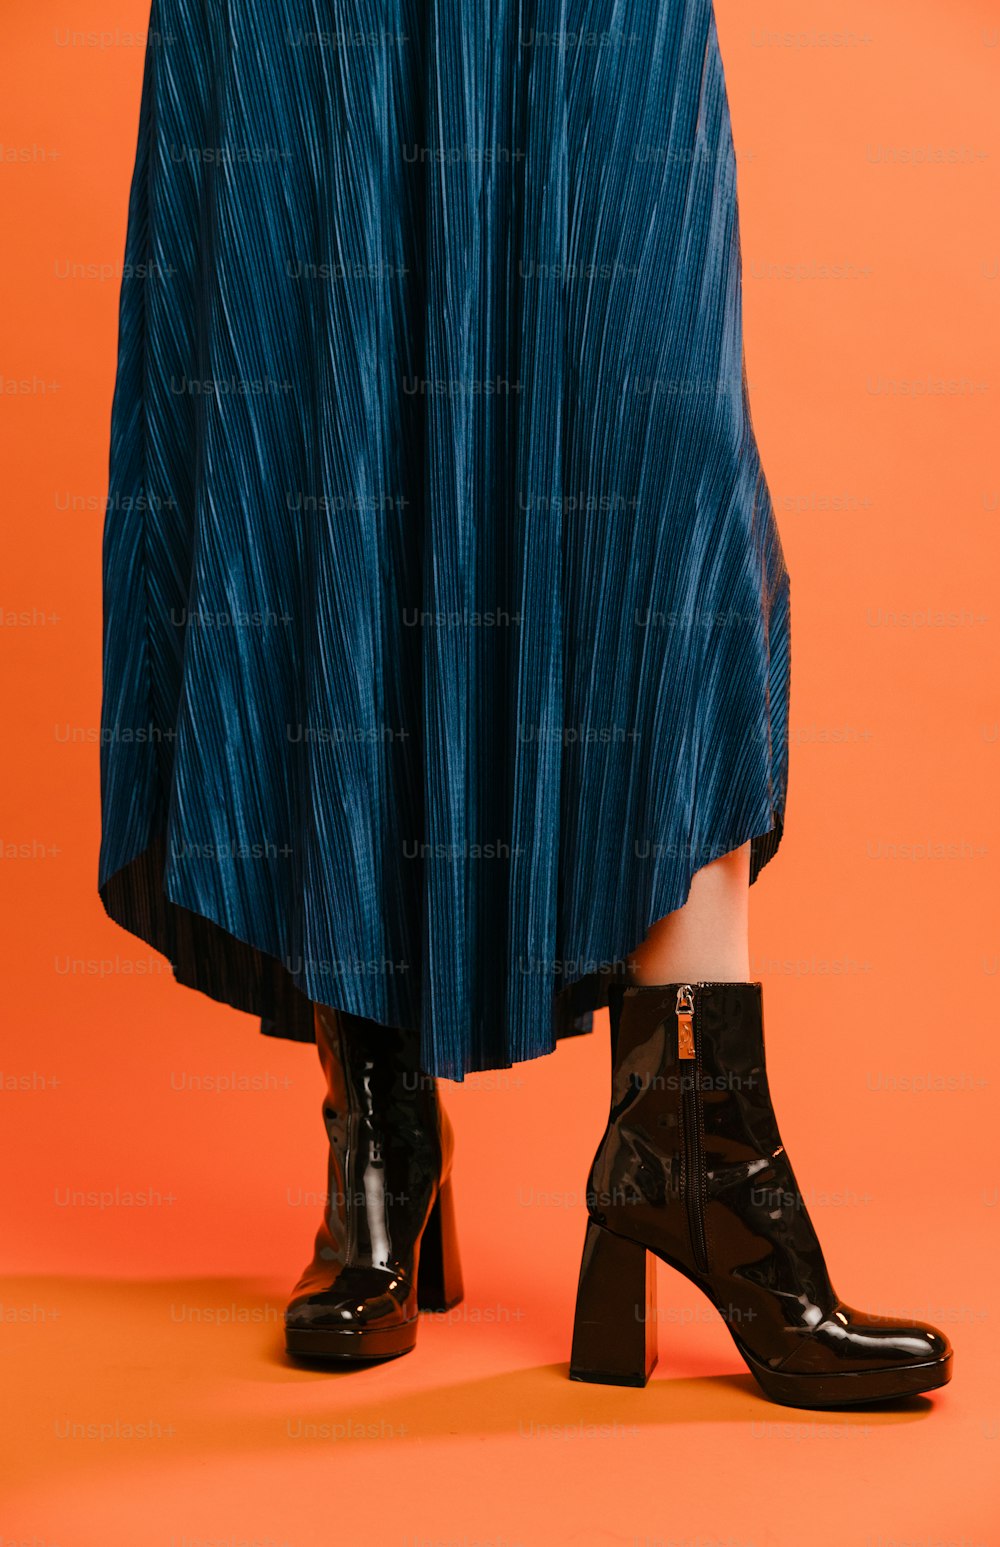 Une femme en jupe bleue et bottes noires